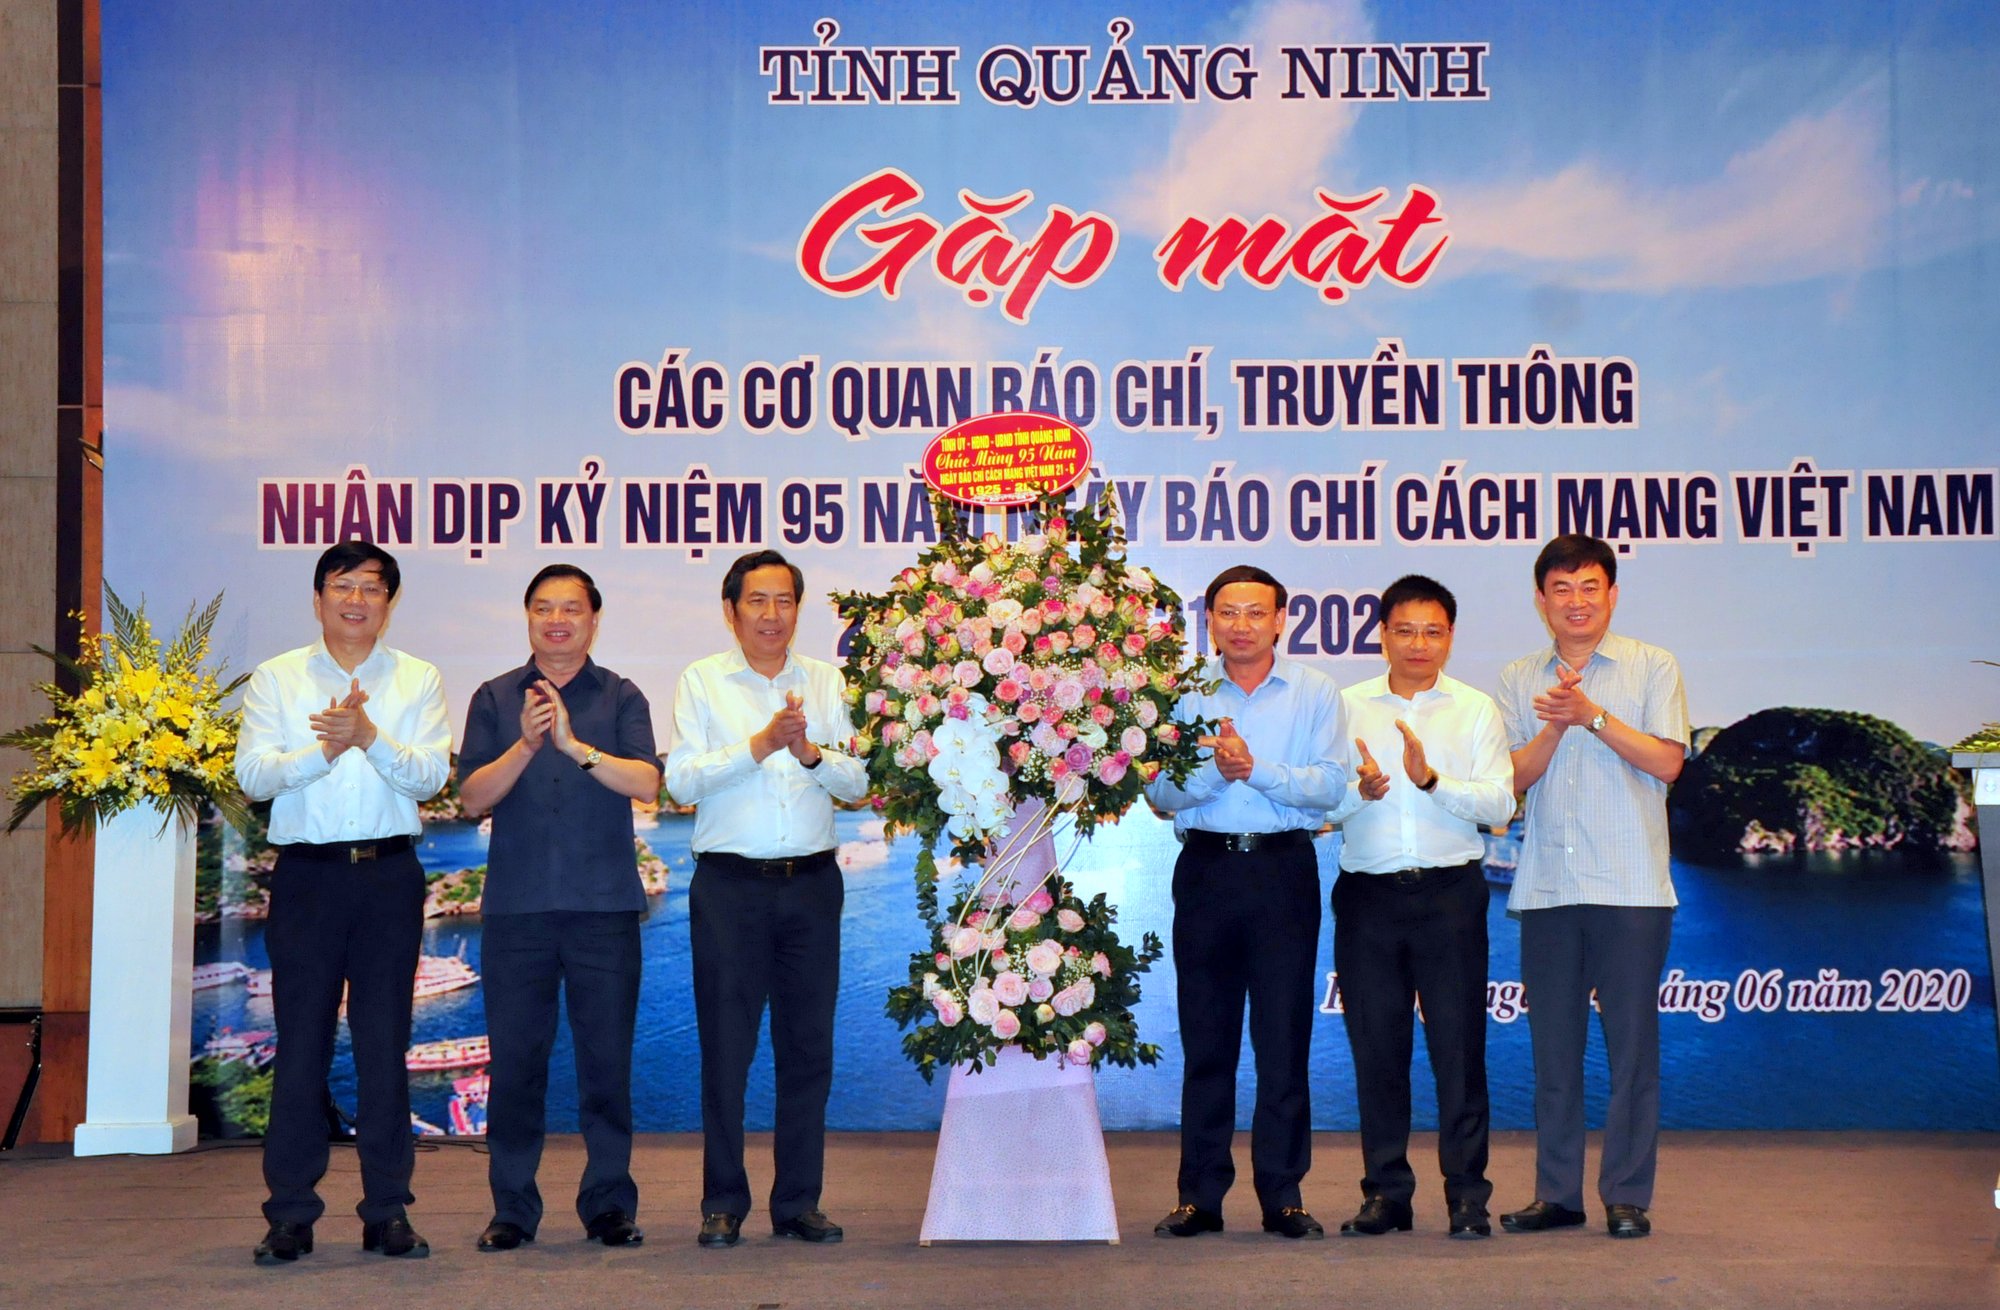 Các đồng chí lãnh đạo tỉnh Quảng Ninh tặng lẵng hoa tươi thắm chúc mừng Hội Nhà báo Việt Nam nhân kỷ niệm 95 năm ngày Báo chí Cách mạng Việt Nam 21/6 (1925-2020)